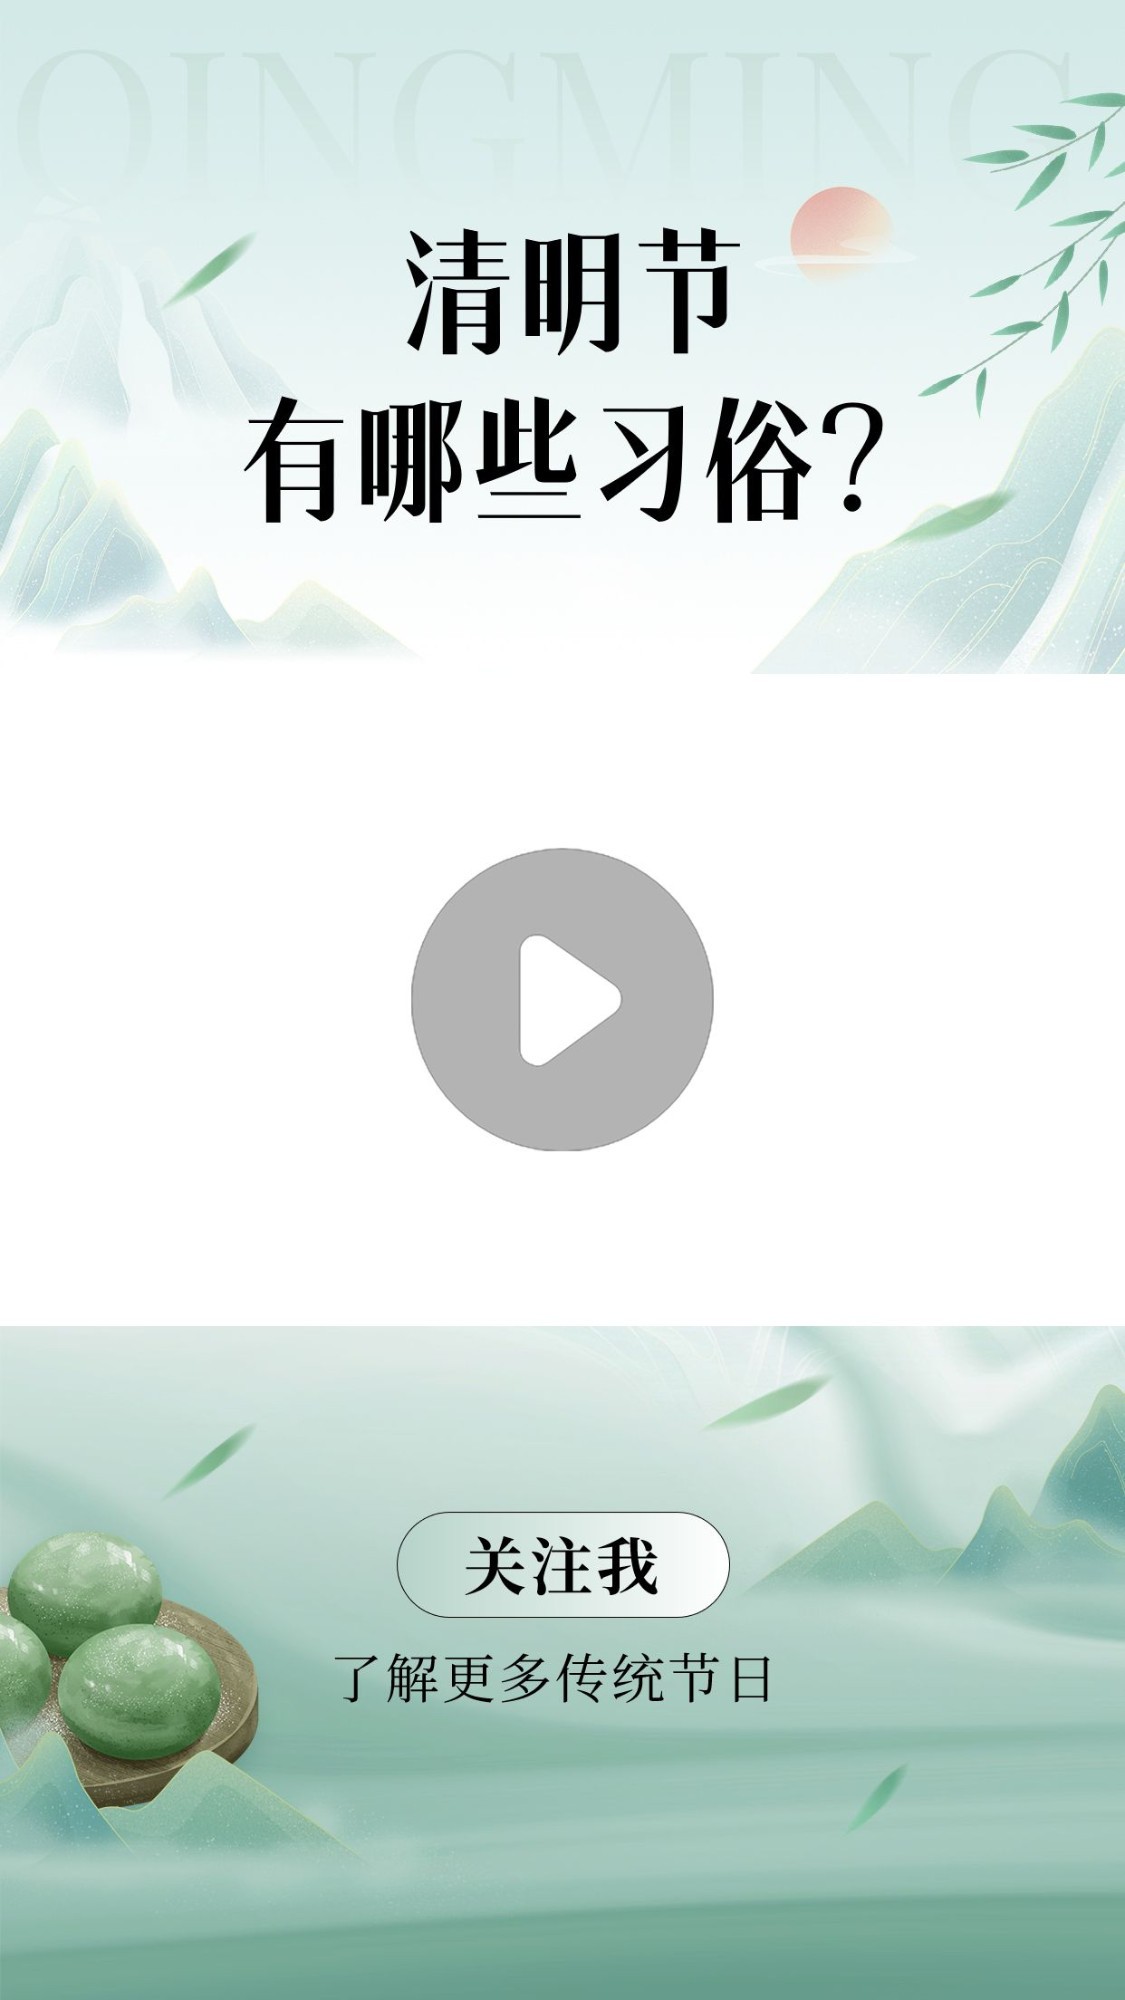 清明节习俗科普宣传视频边框预览效果